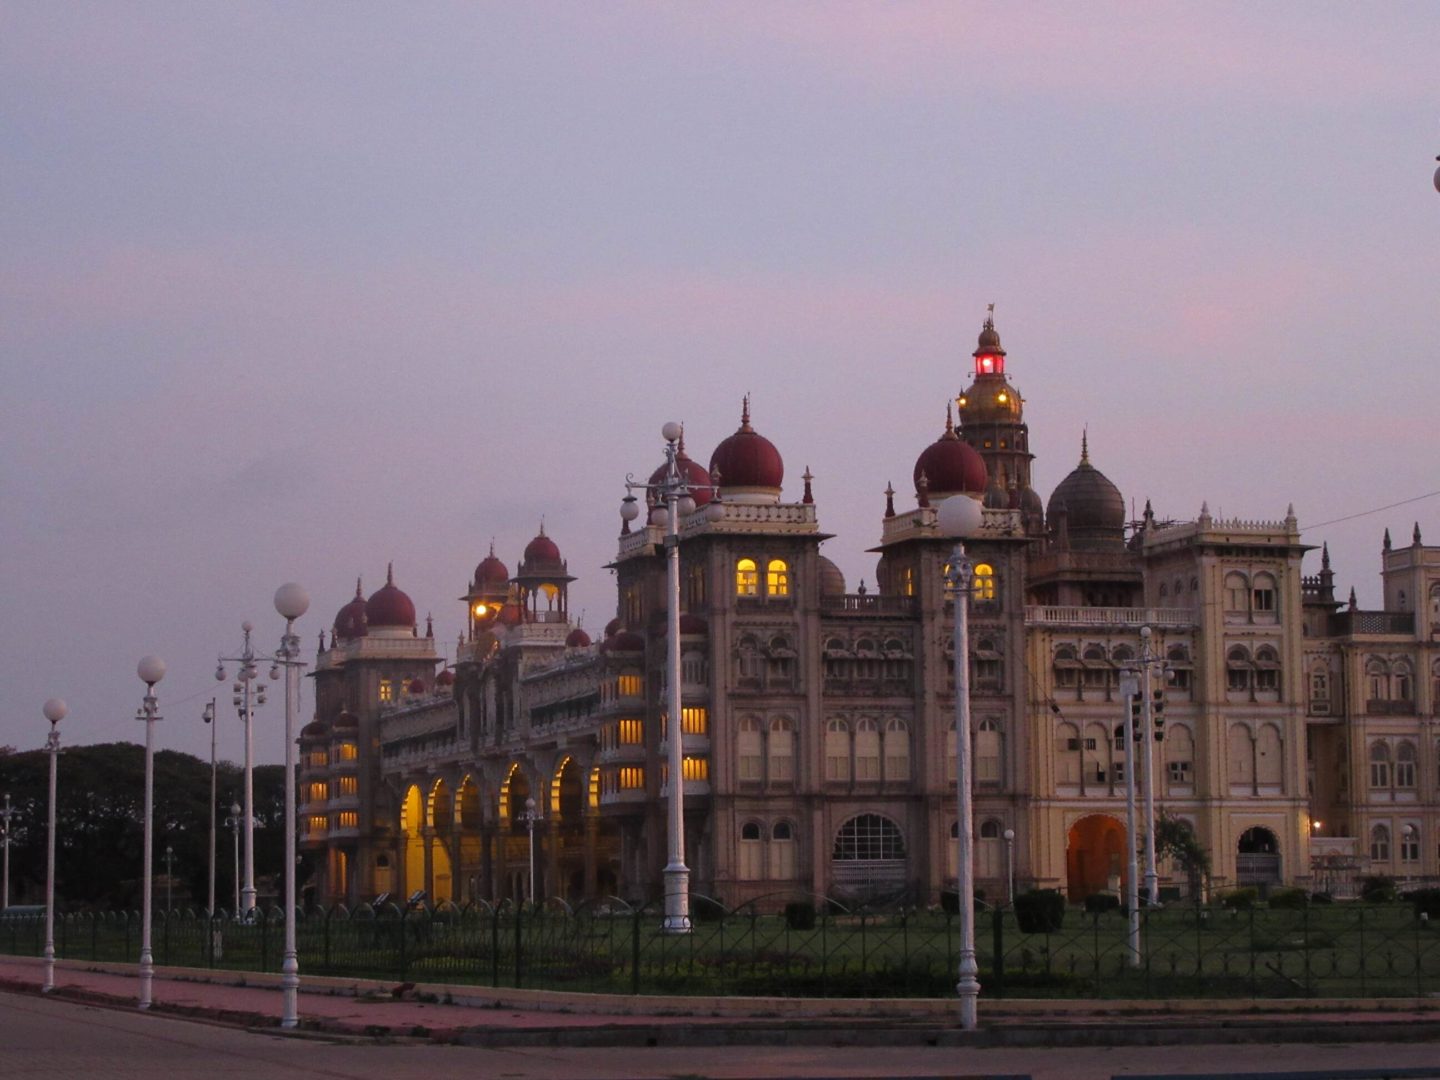 Der Maharaja-Palast in Mysore am Abend. Er wird an Sonn- und Feiertagen mit hundertausenden von Lampen beleuchtet.